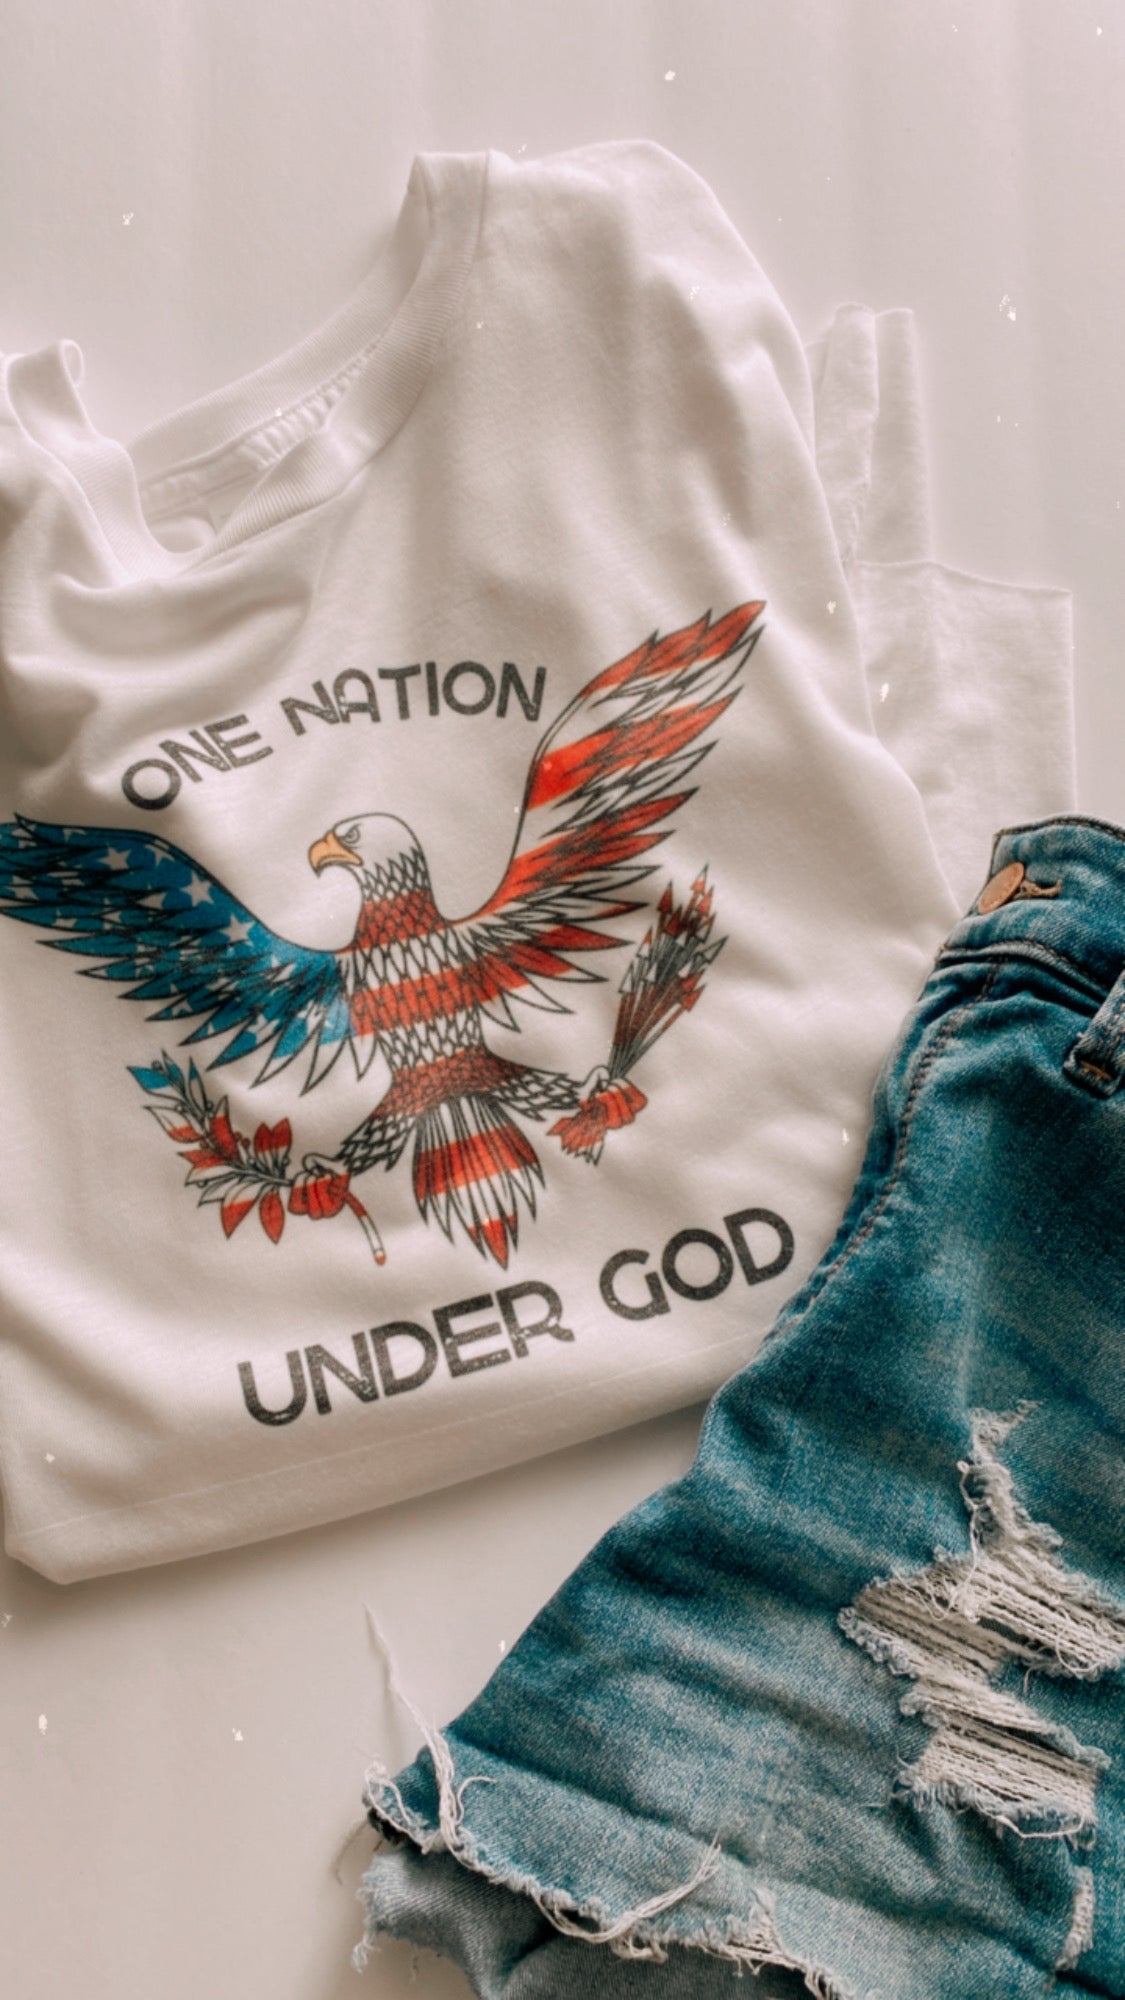 One Nation Under God Unisex Tee